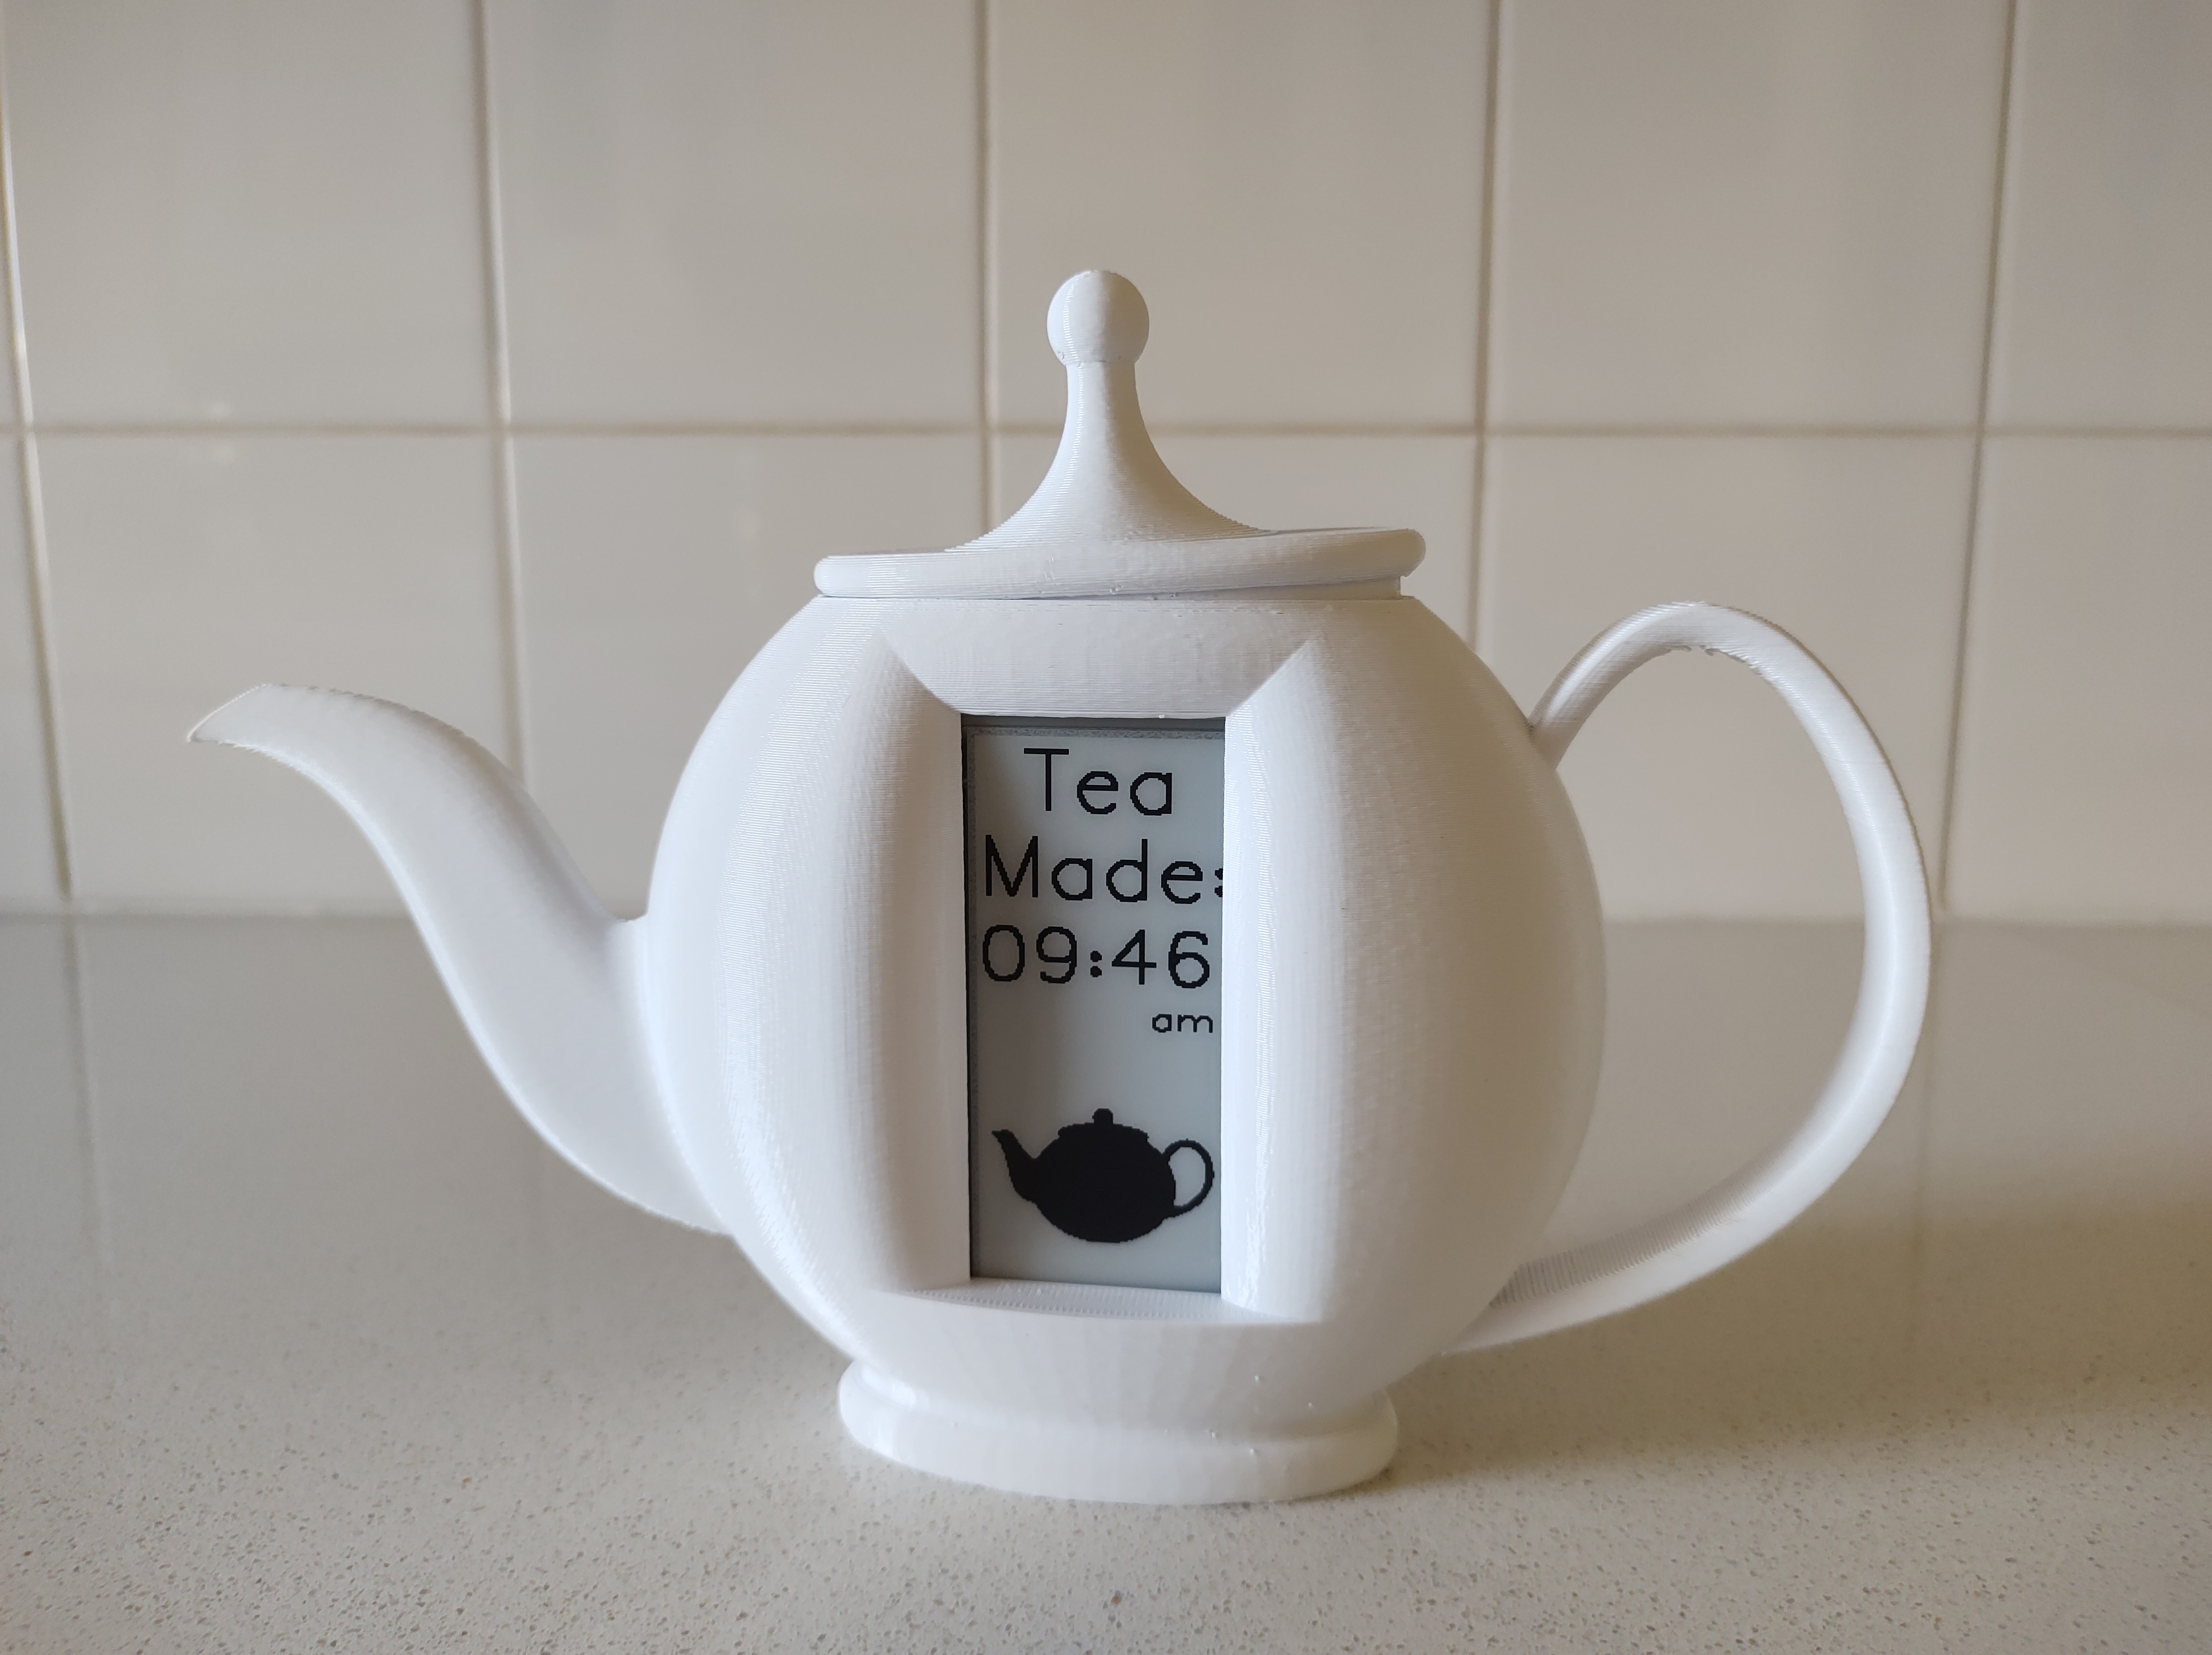 أعد ملء إبريق الشاي في الوقت المحدد باستخدام مؤقت الشاي بالحبر الإلكتروني